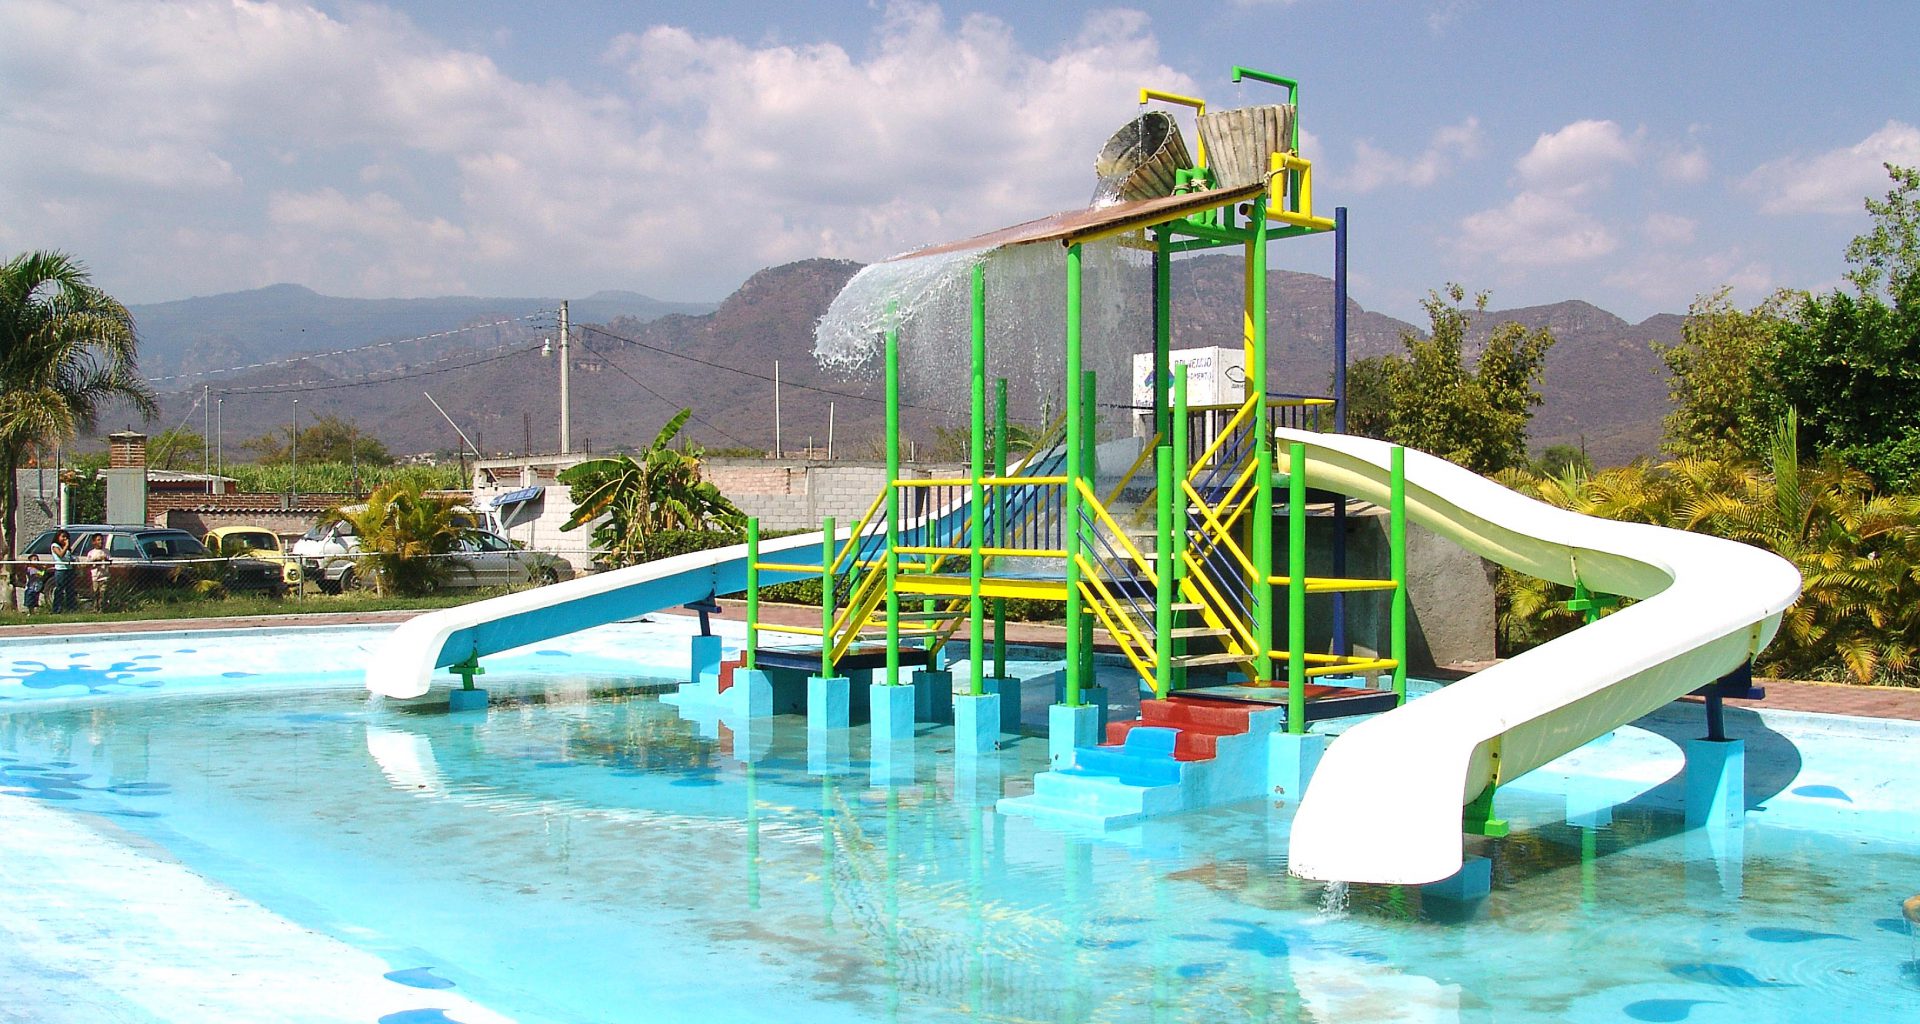 Balneario Vista del Sol en Yautepec - Morelos: Ubicación, precios y servicios del parque acuático